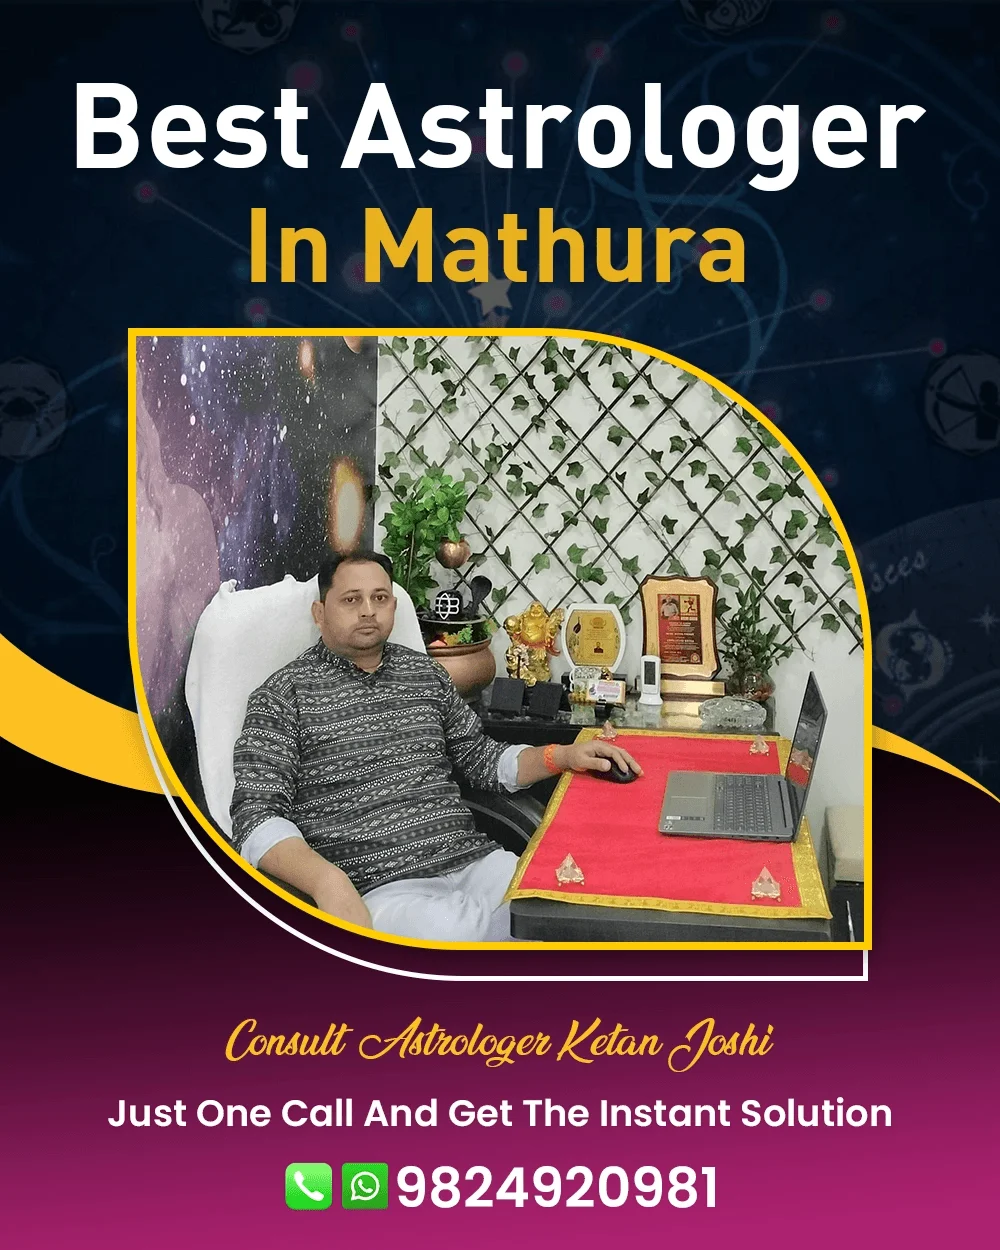 Best Astrologer In Mathura